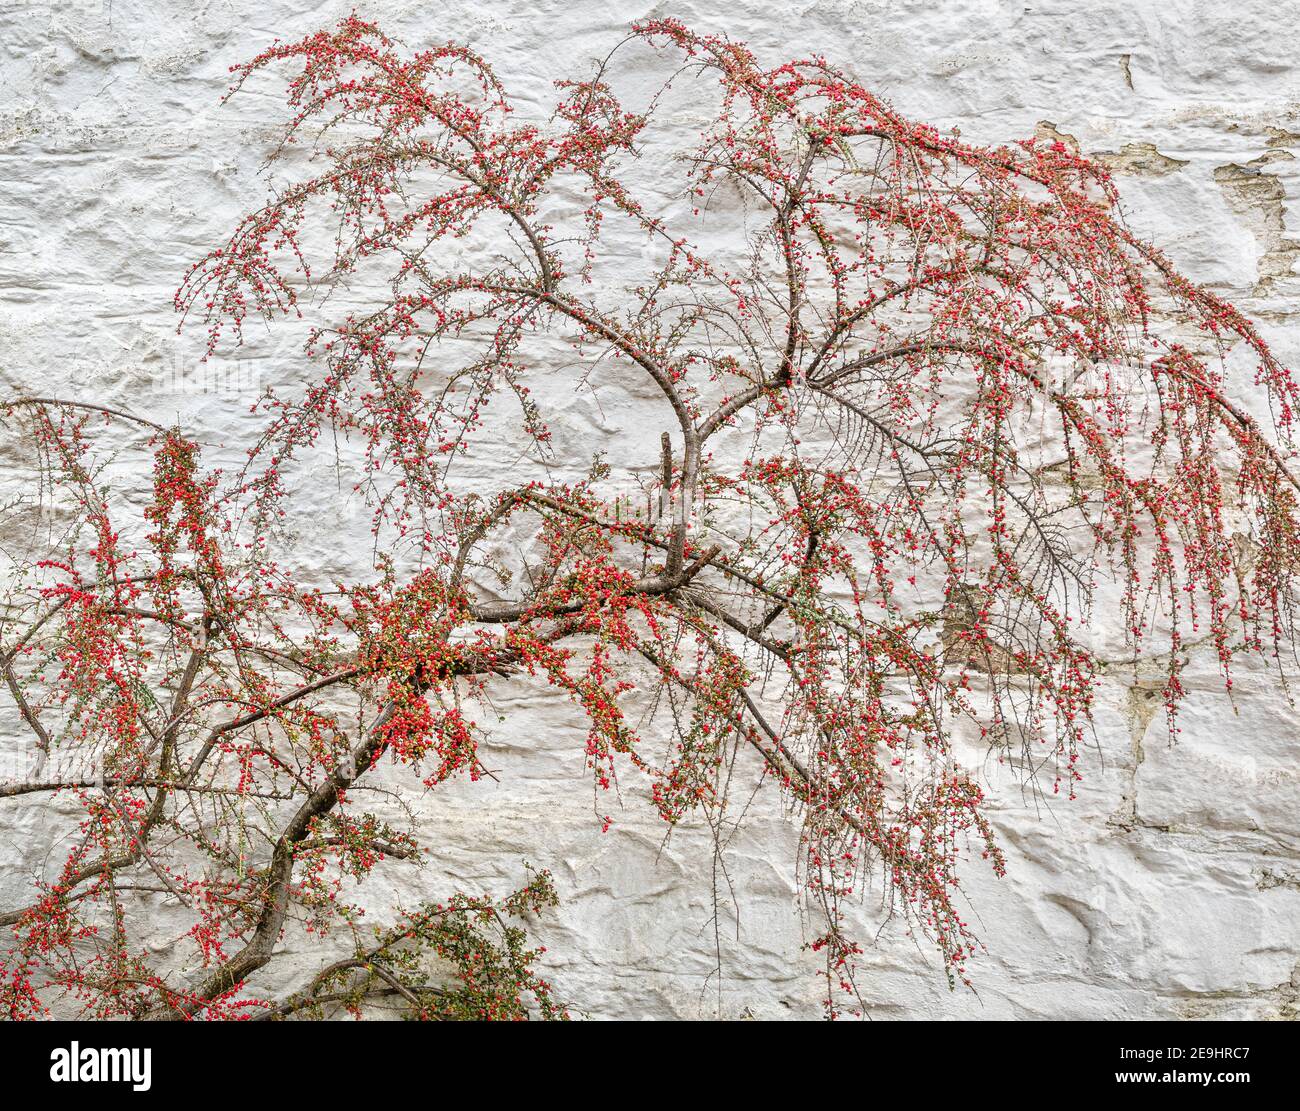 Glencoe, Escocia: Un arbusto agraciado contra una pared de piedra blanca lavada. Foto de stock